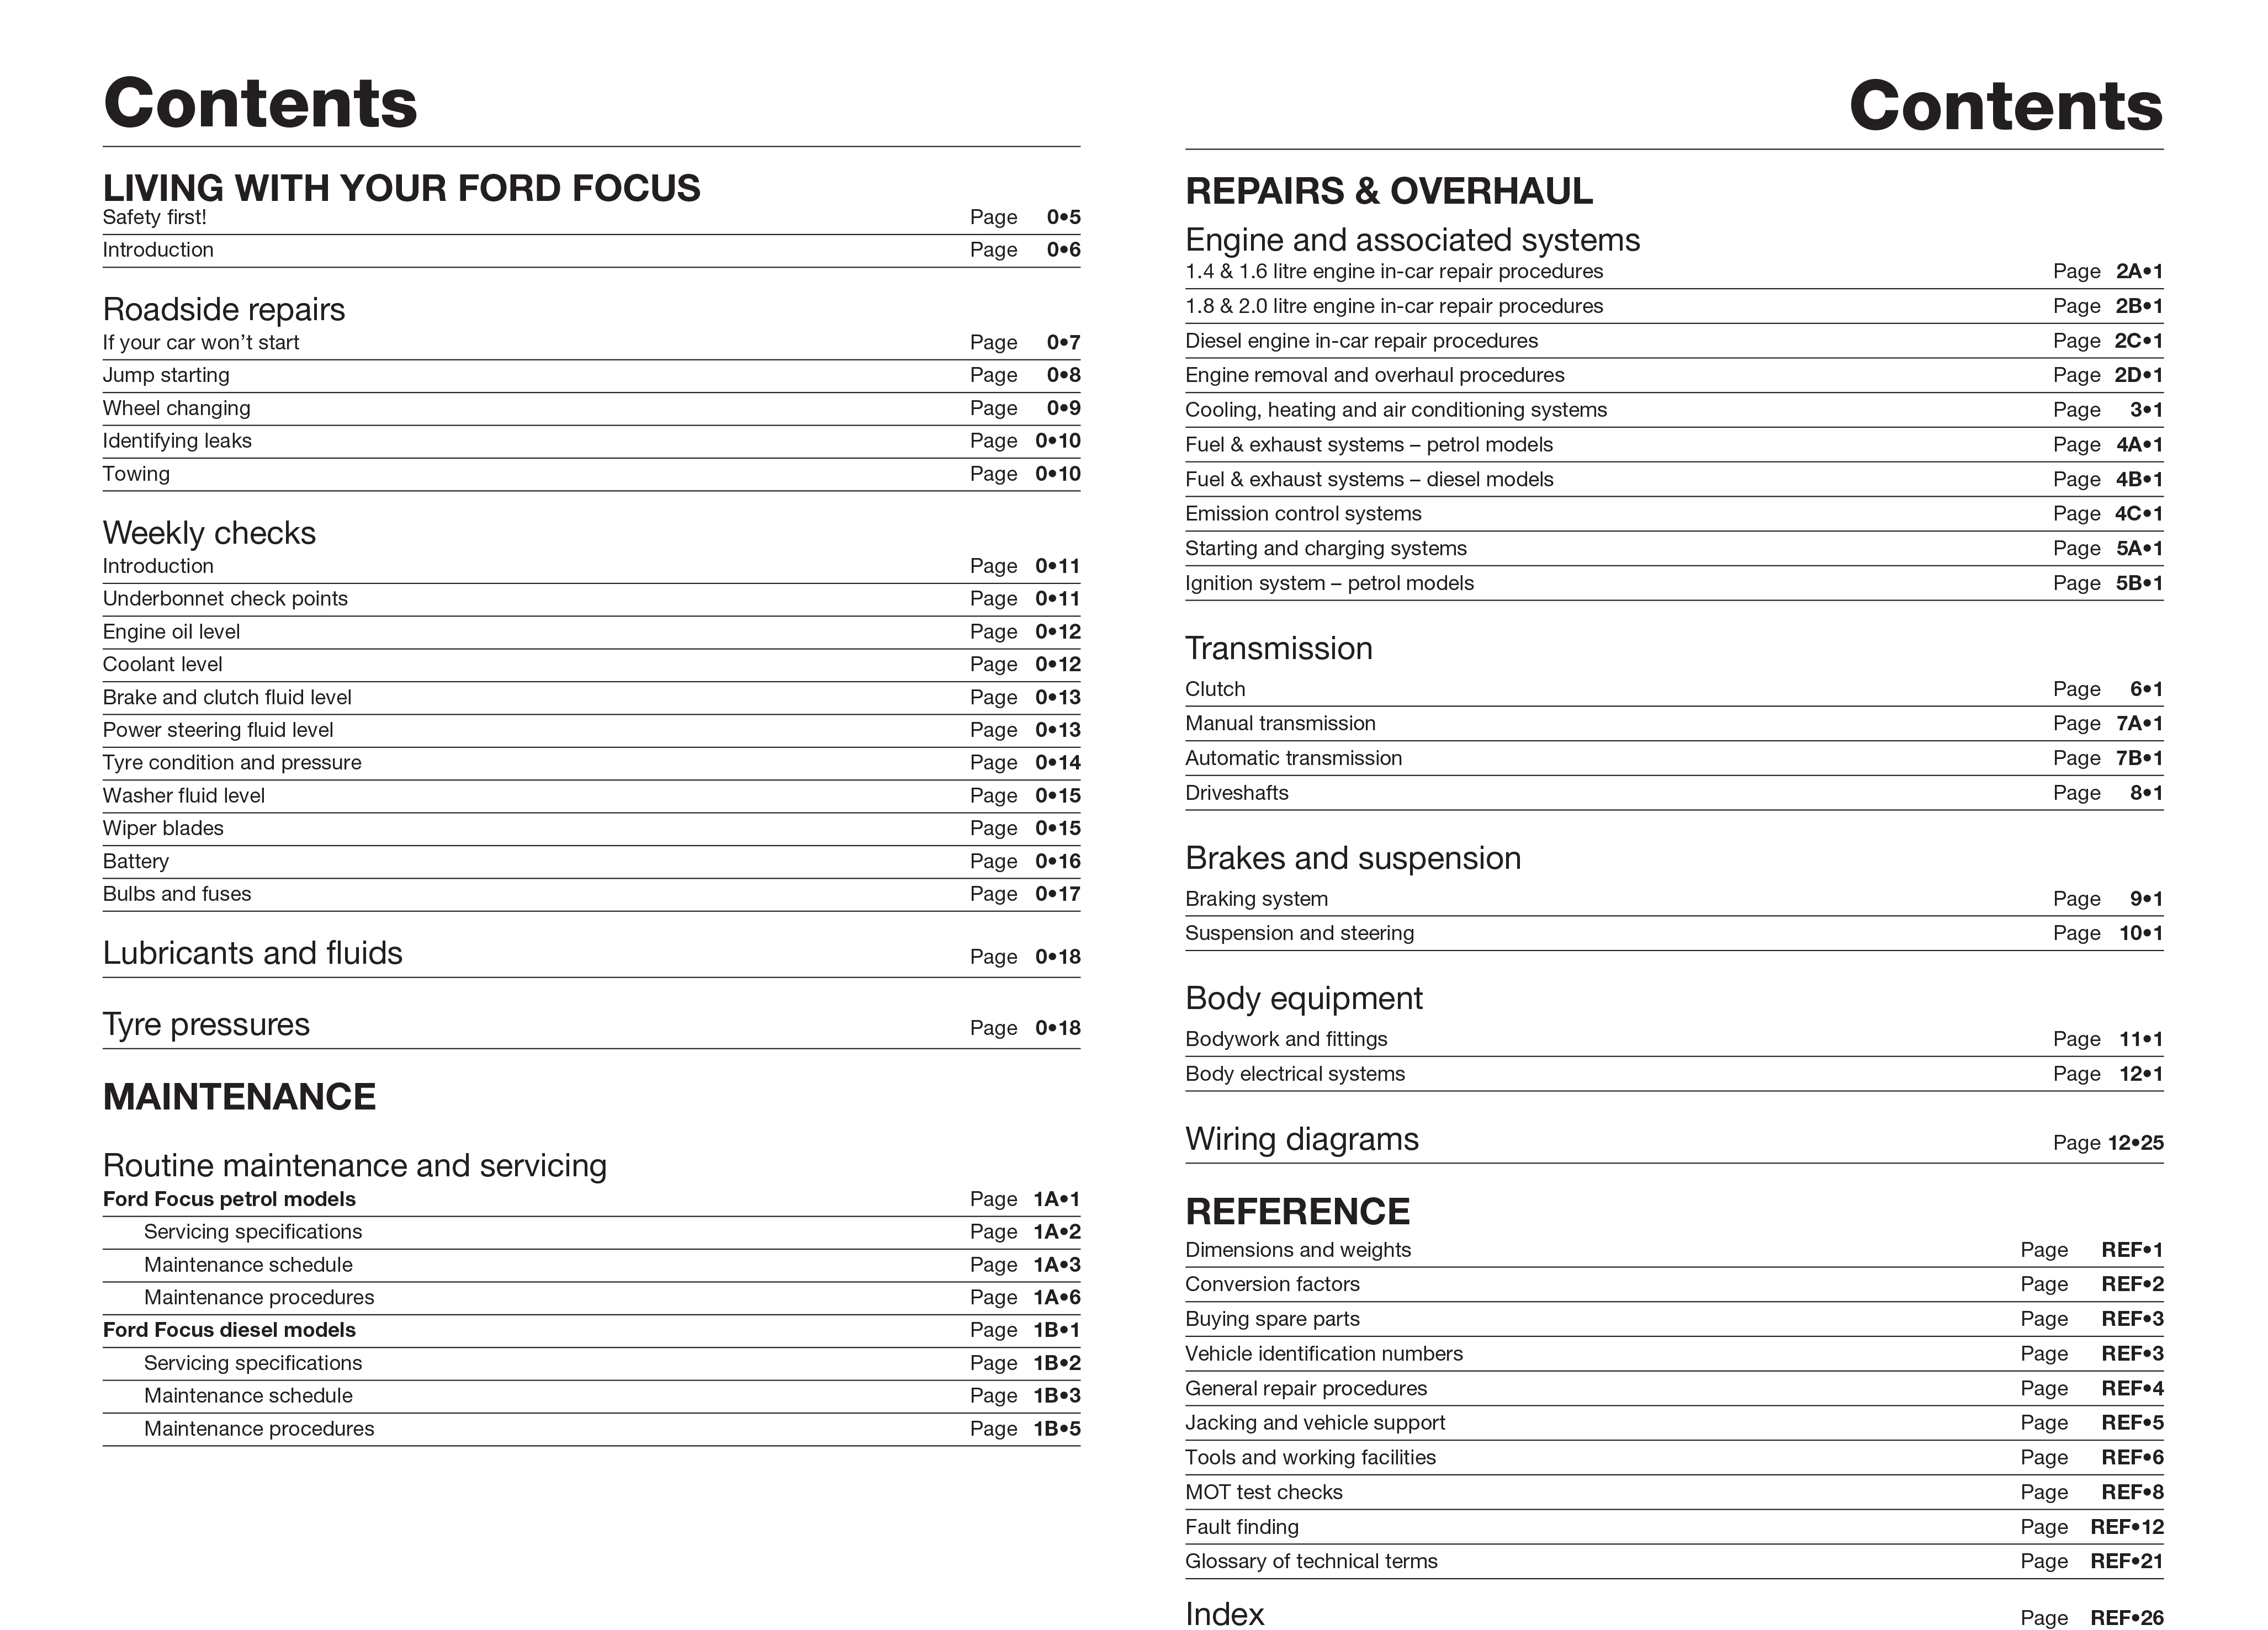 Ford focus haynes manual pdf free download for mac